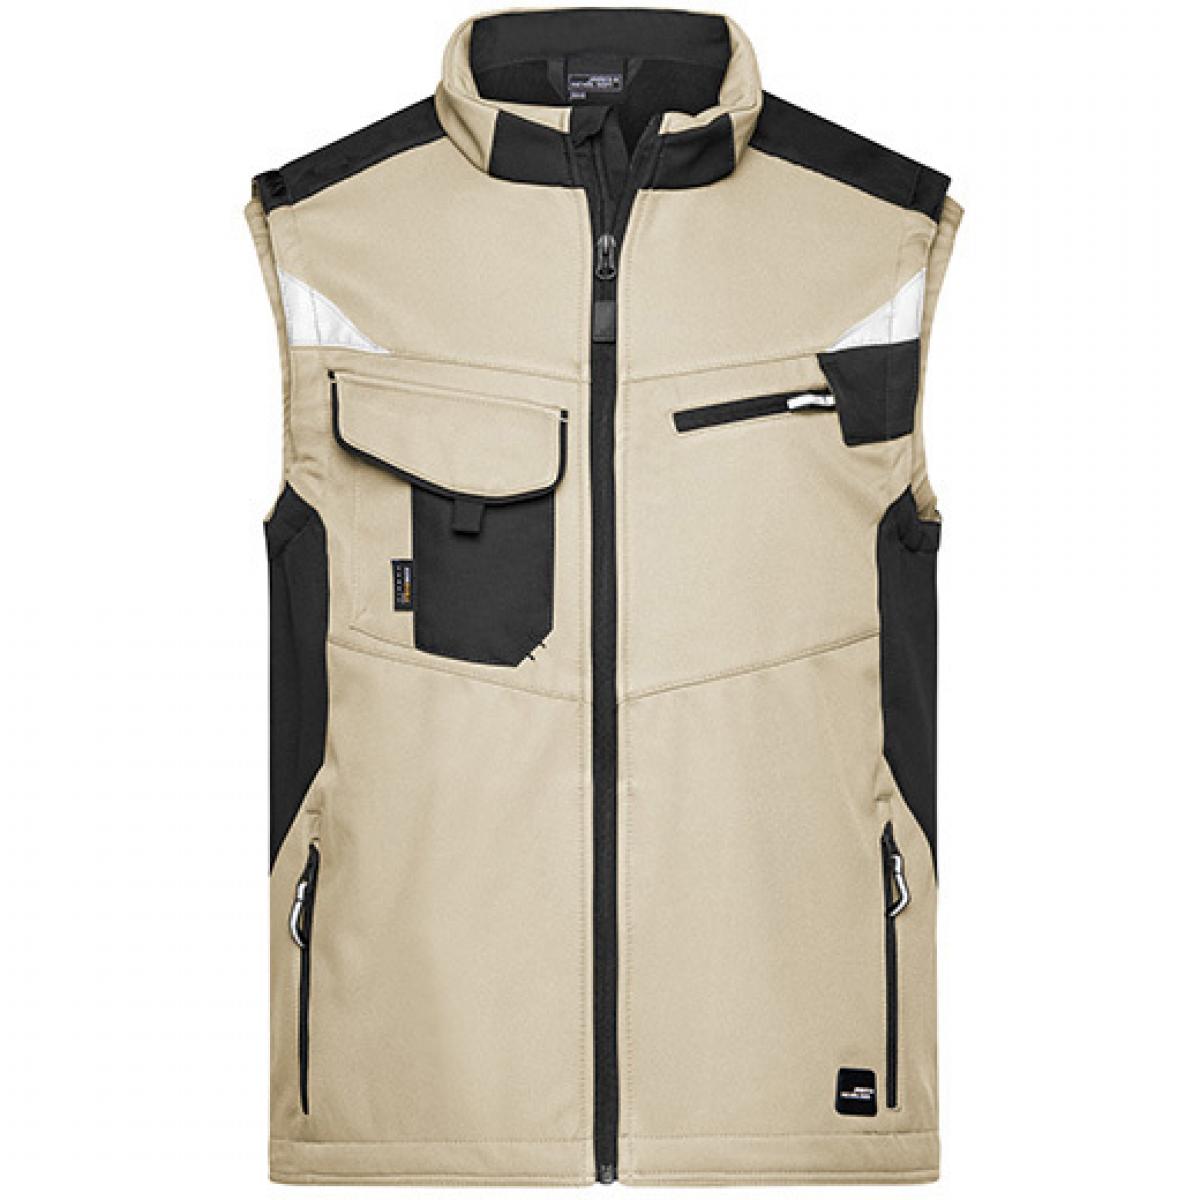 Hersteller: James+Nicholson Herstellernummer: JN845 Artikelbezeichnung: Herren Jacke, Workwear Softshell Vest -STRONG- Farbe: Stone/Black